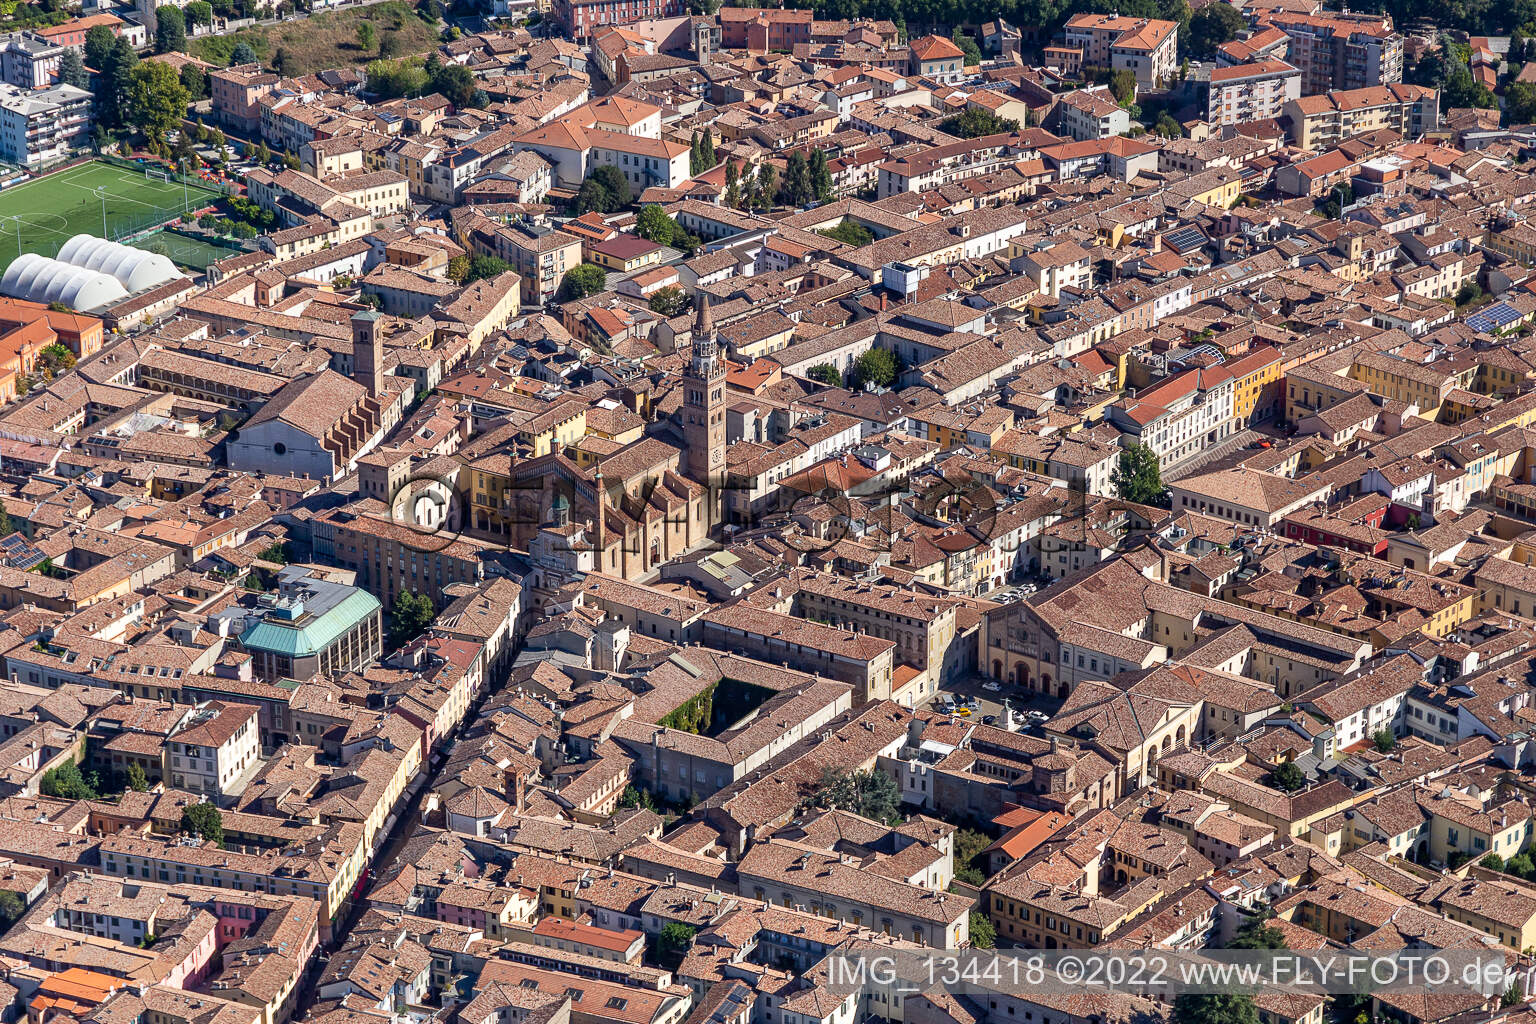 Vue aérienne de Cathédrale de Santa Maria Assunta à Crema dans le département Cremona, Italie